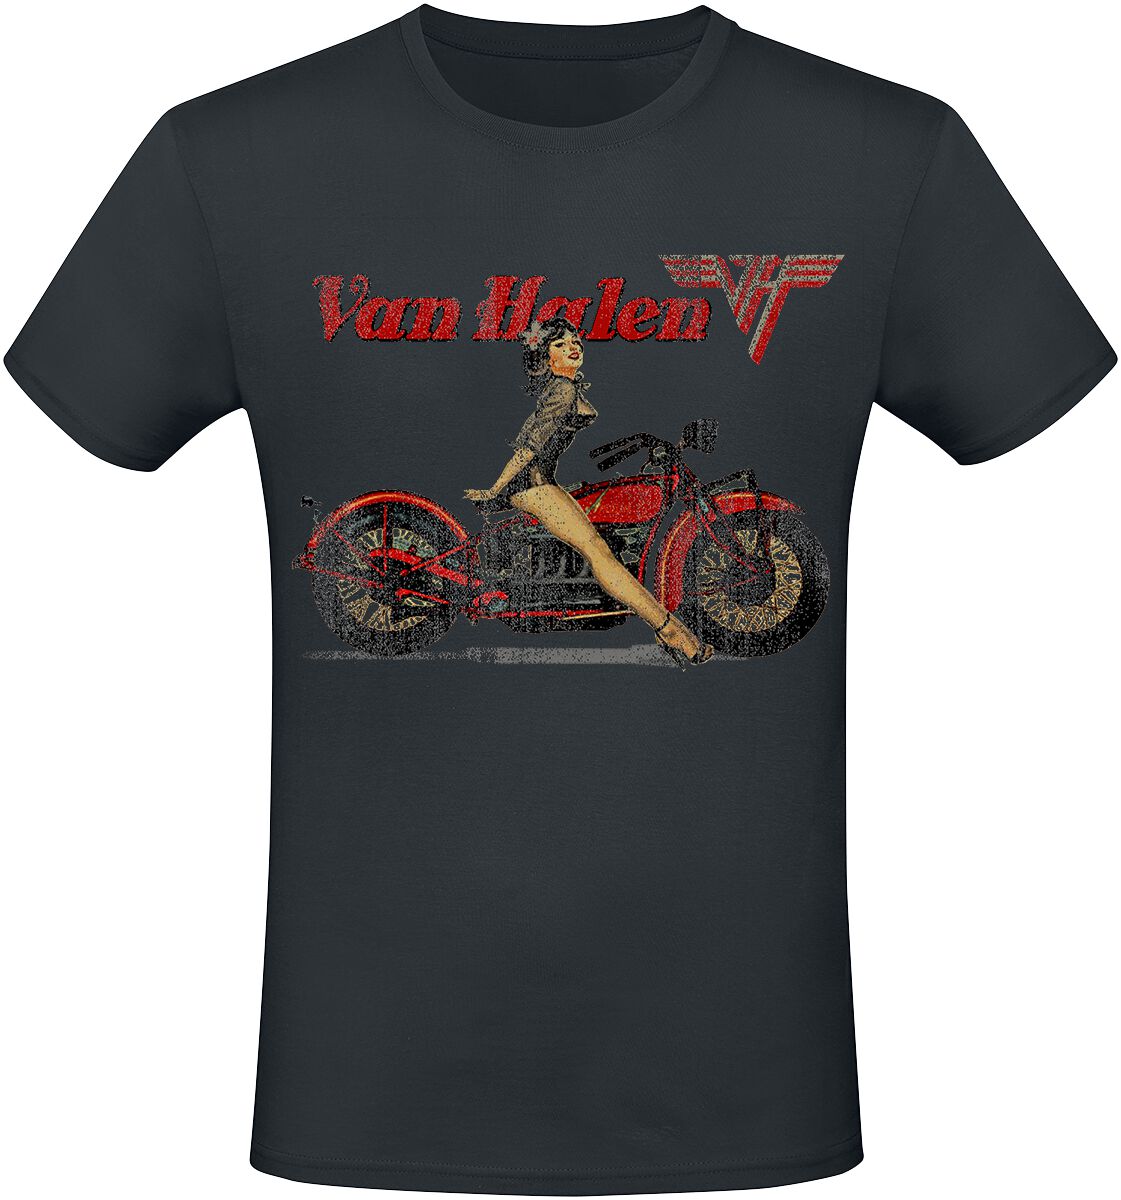 Van Halen T-Shirt - Pinup Motorcycle - S bis 3XL - für Männer - Größe L - schwarz  - Lizenziertes Merchandise!